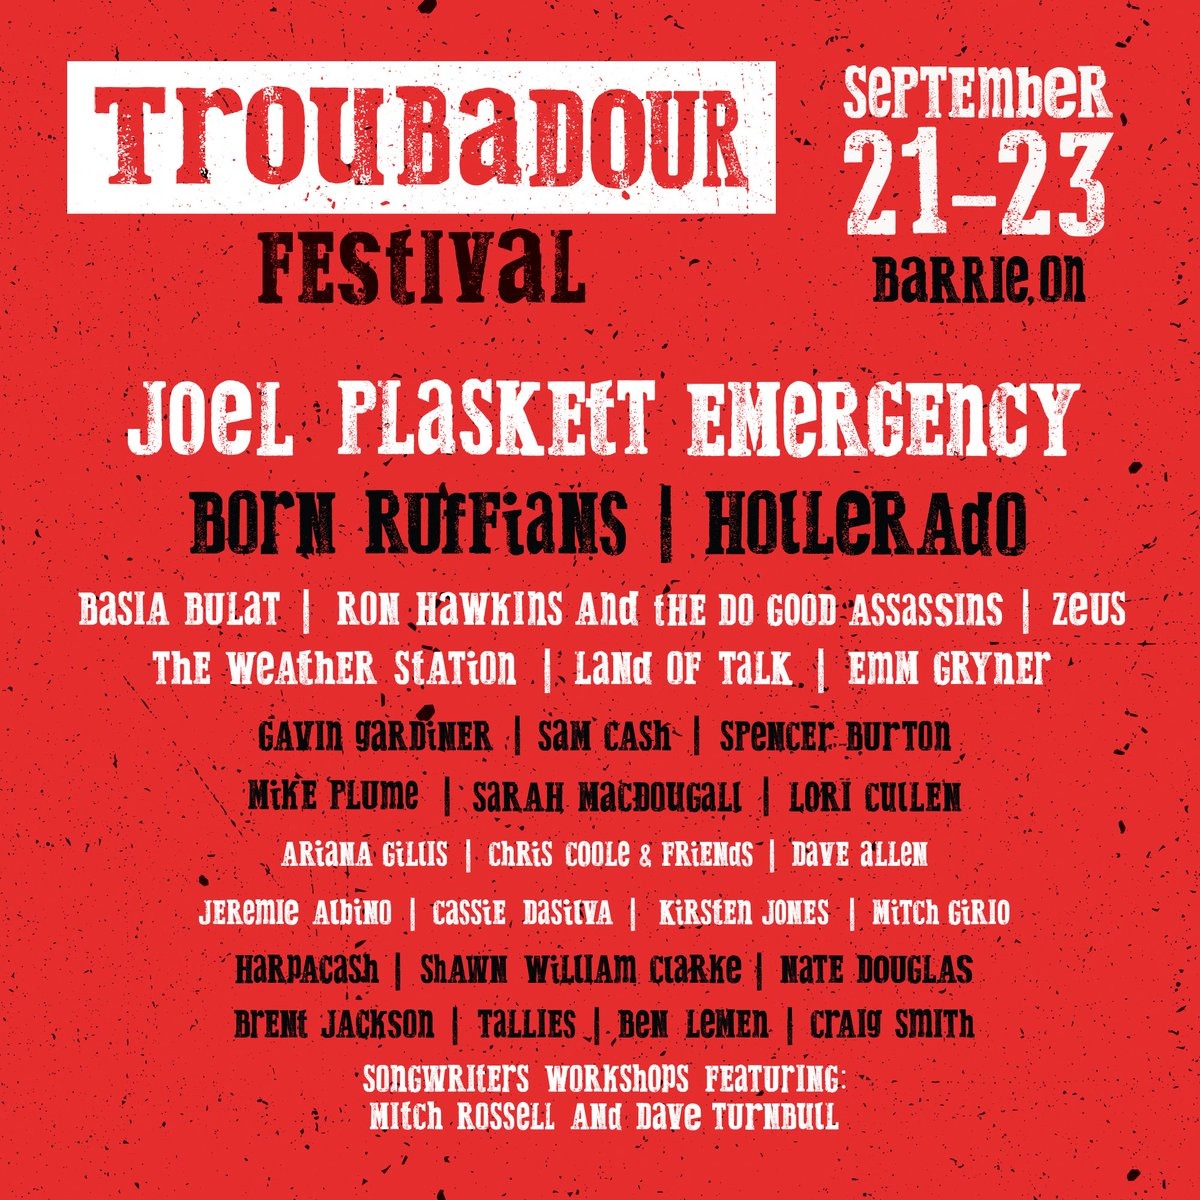 Troubadour Festival 2018 Tickets | Joel Plaskett Emergency, Born Ruffians 